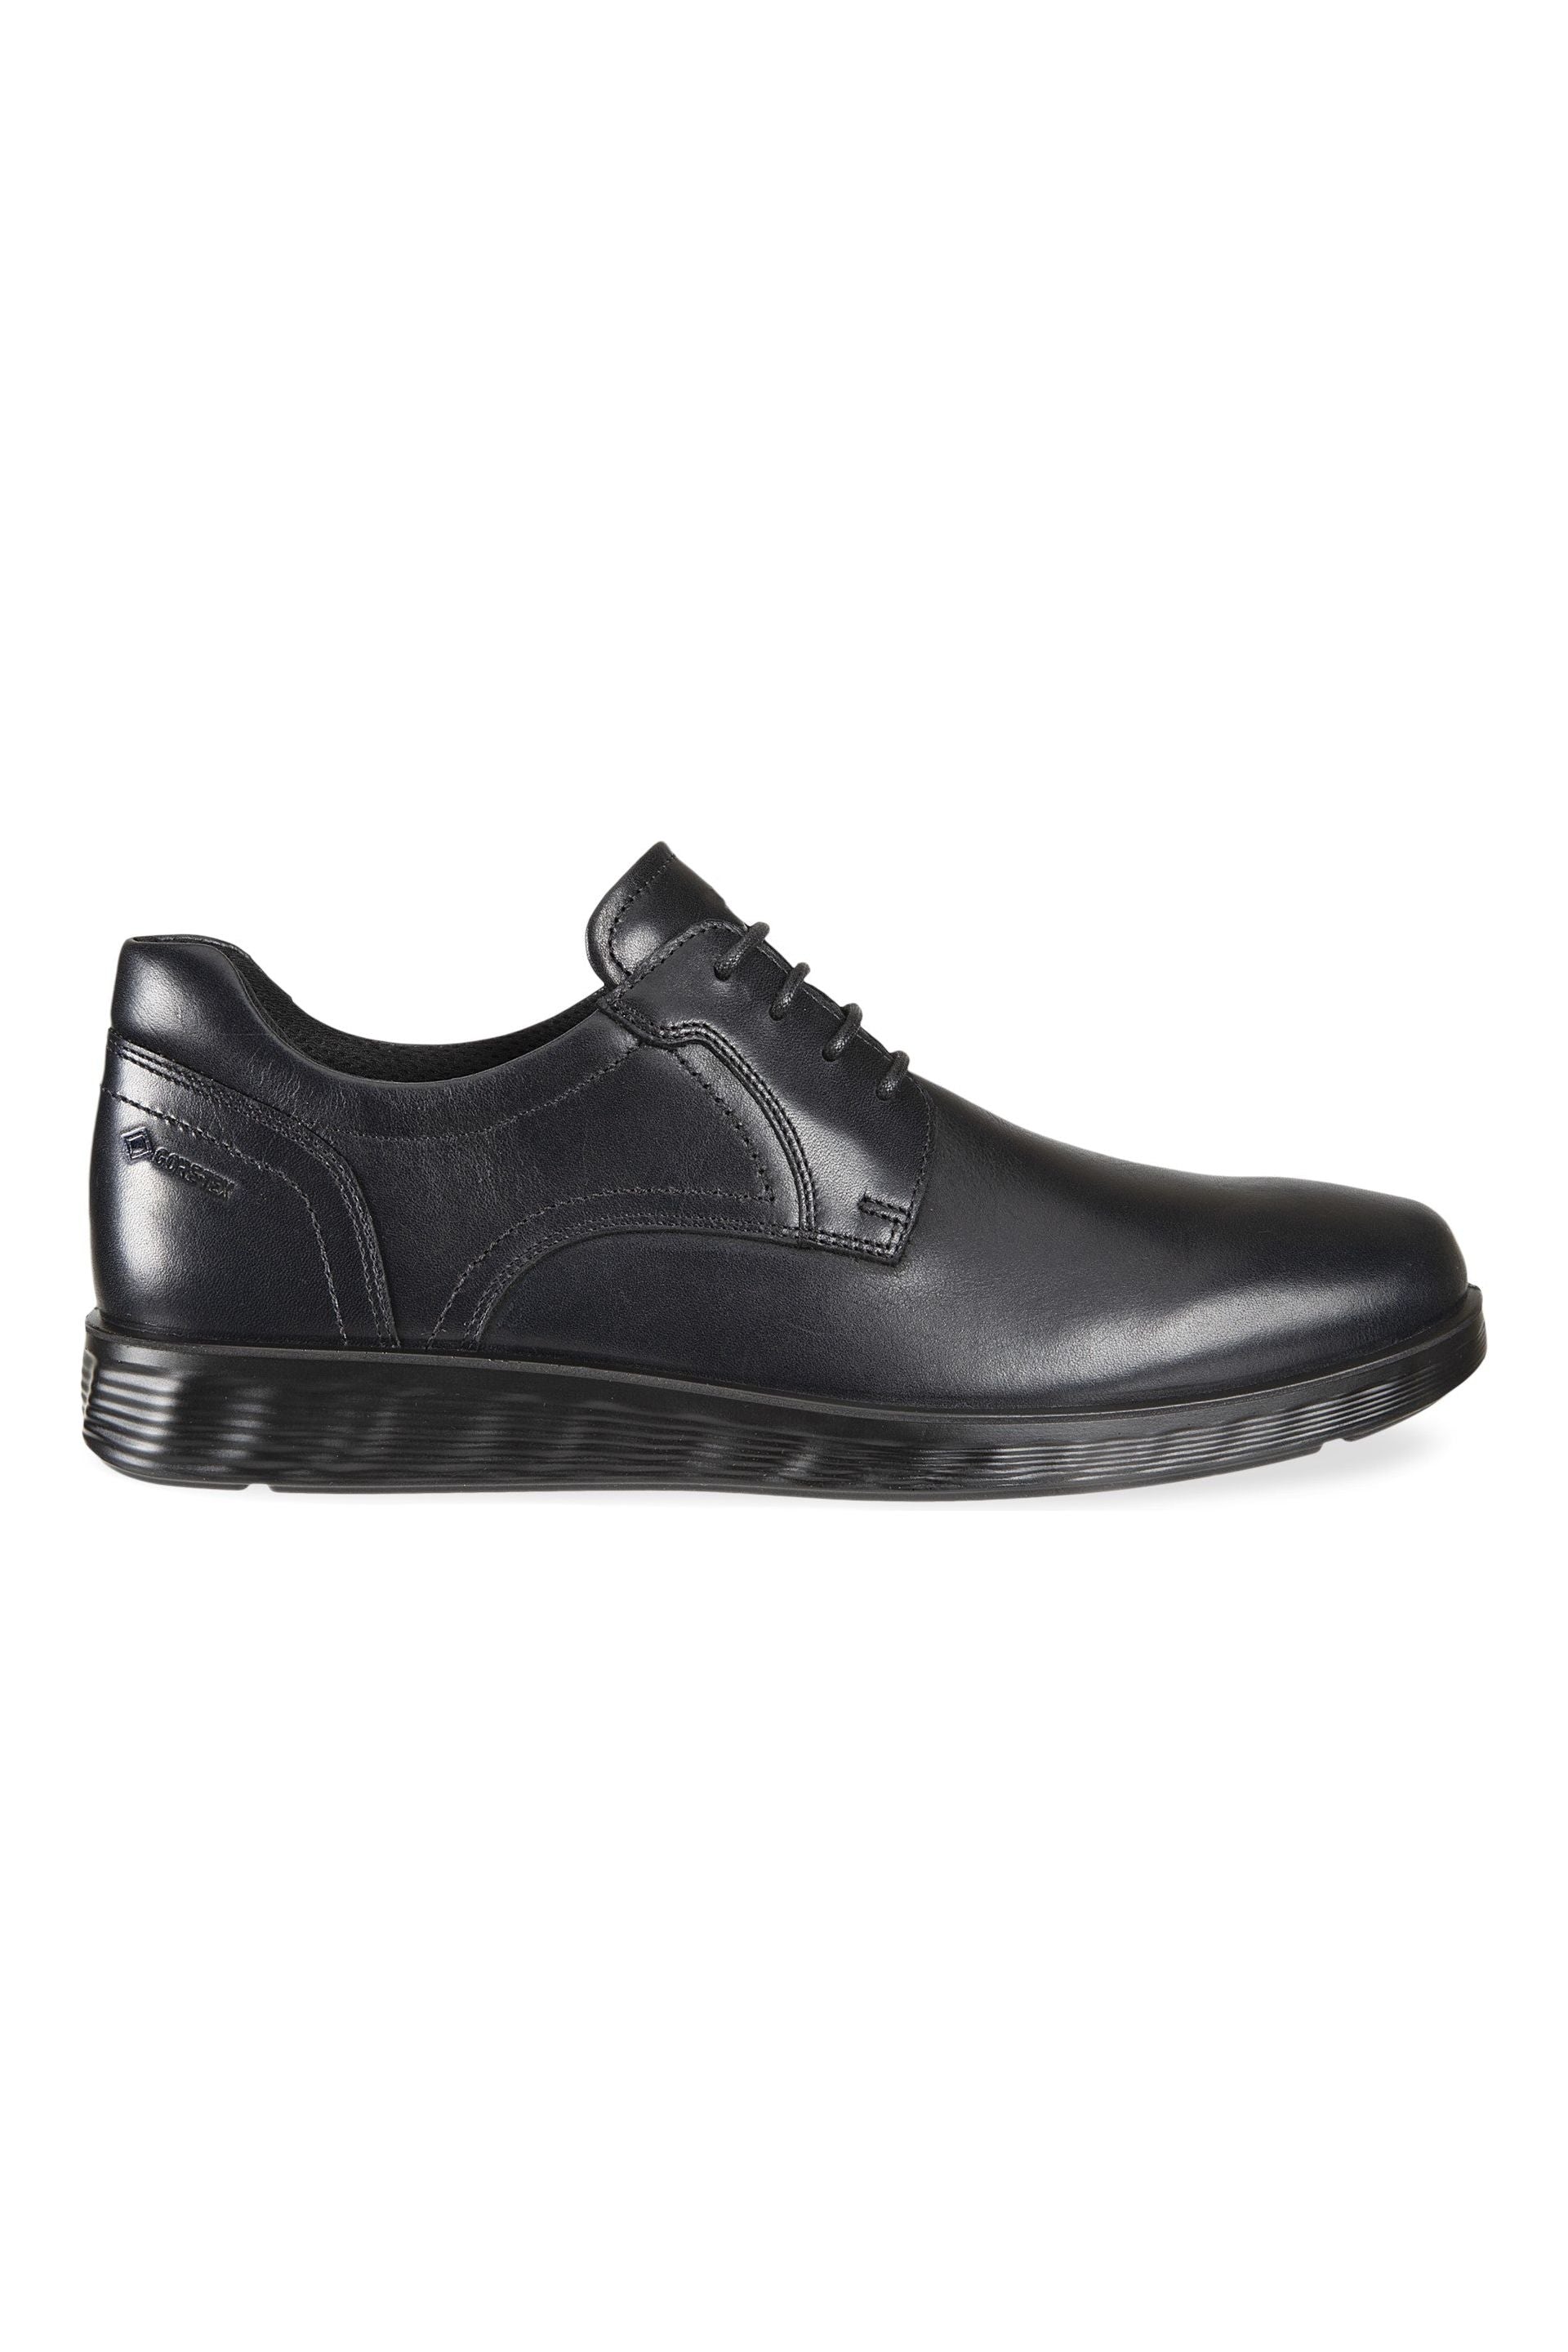 ECCO S Lite Gortex Shoe 520364-01001 in Black leather